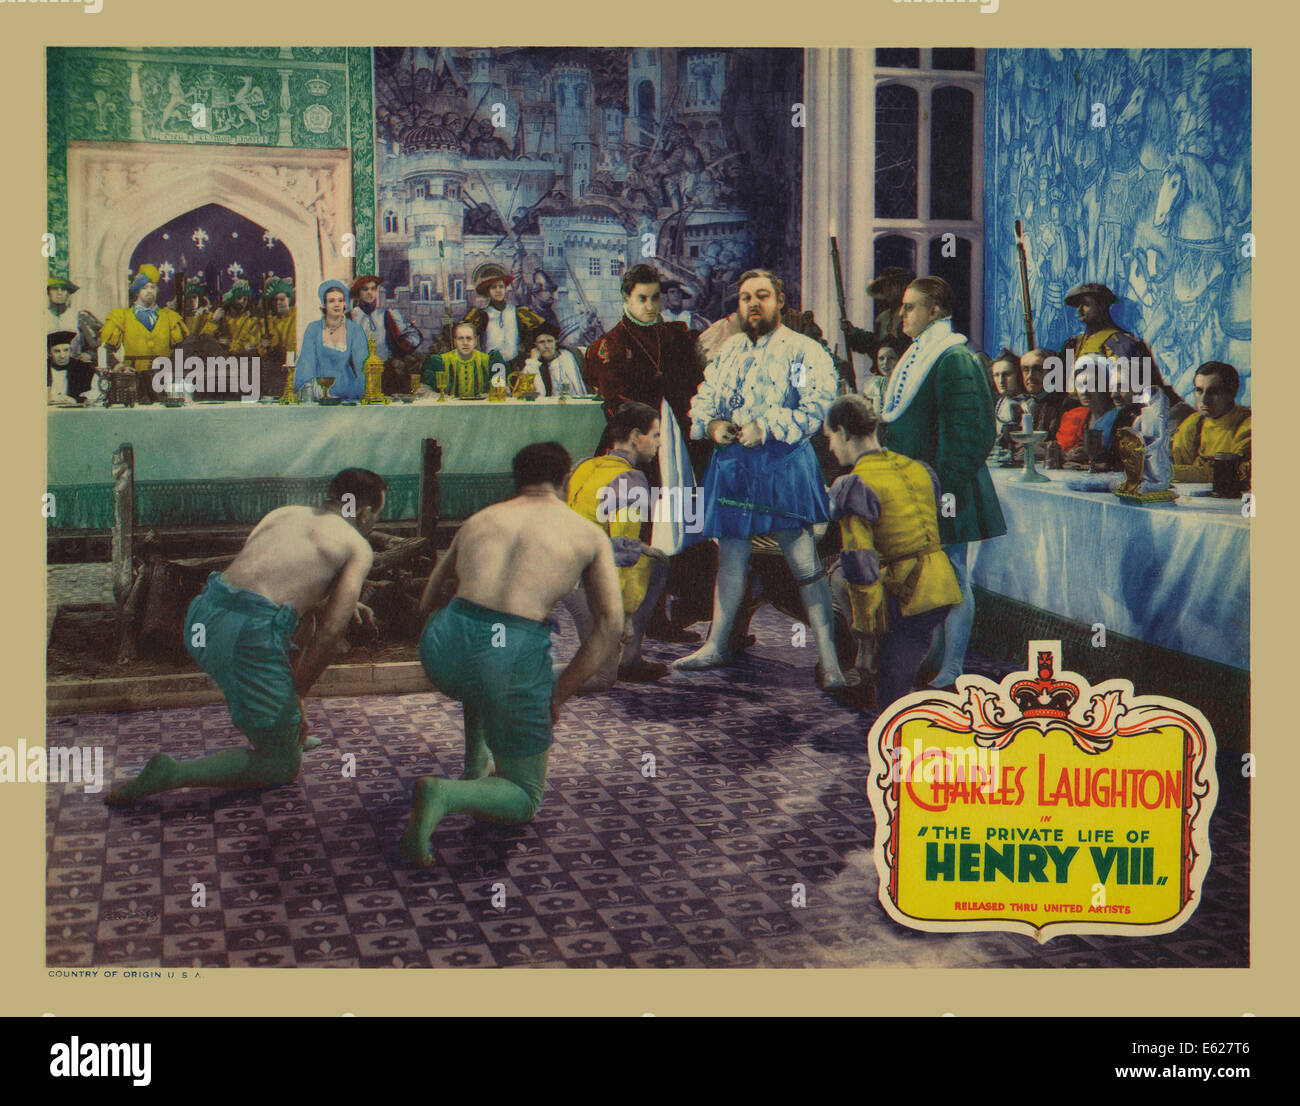 La VIE PRIVÉE D'HENRY VIII - avec Charles Laughton - Affiche - film réalisé par Alexander Korda - United Artists 1933 Banque D'Images